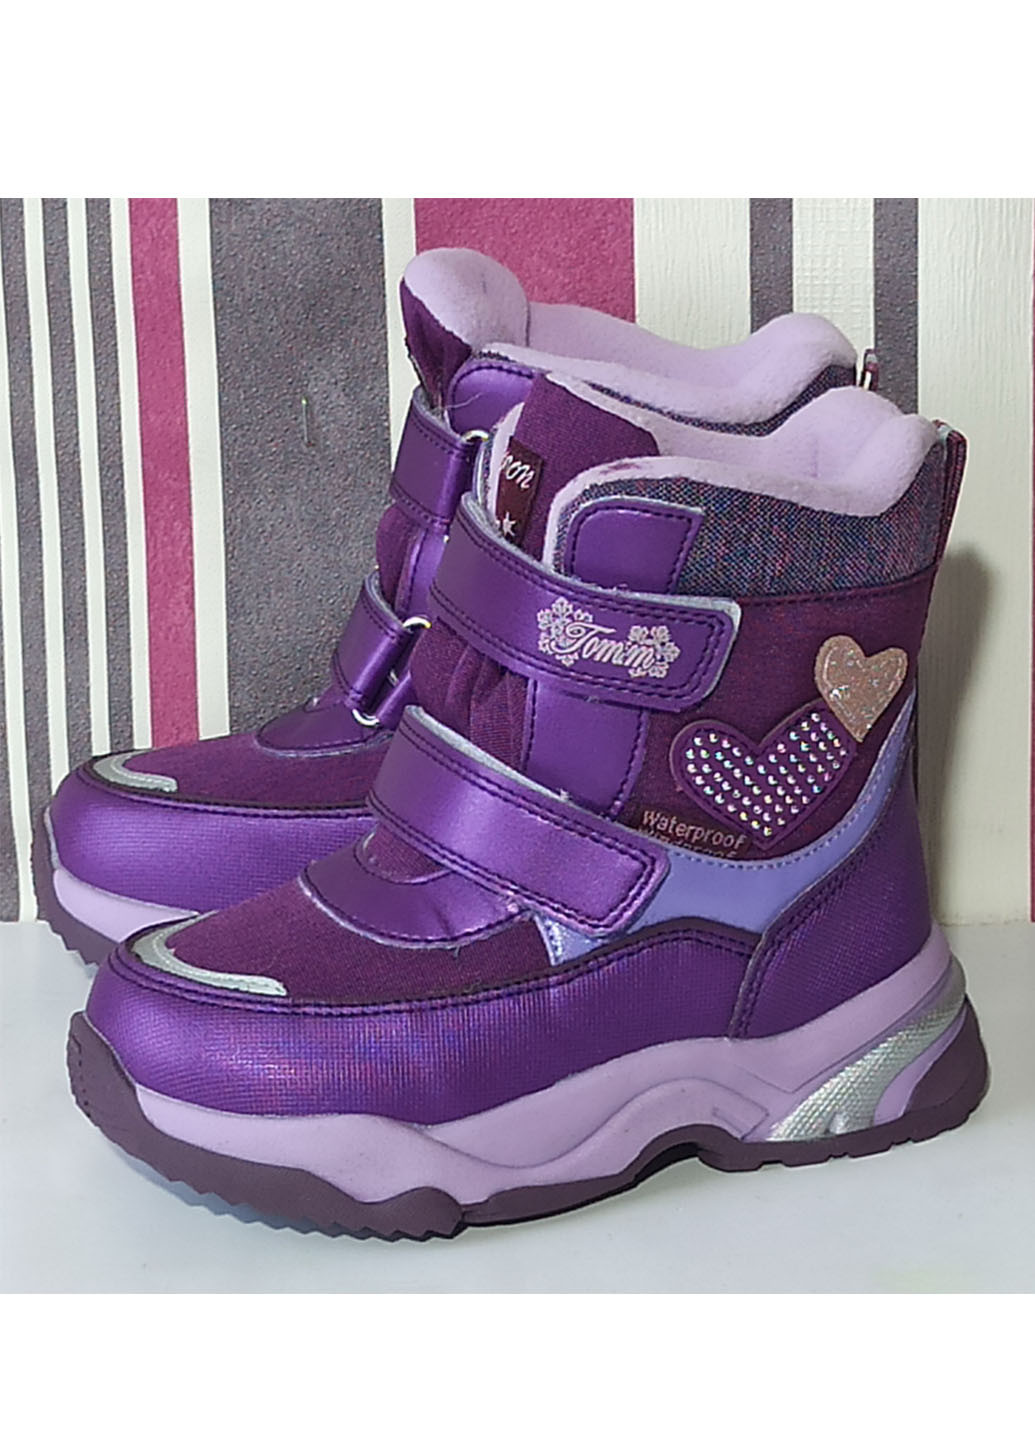 Темно-фиолетовые повседневные зимние детские зимние ботинки для девочки на овчине том м 10244w фиолетовые Tom.M